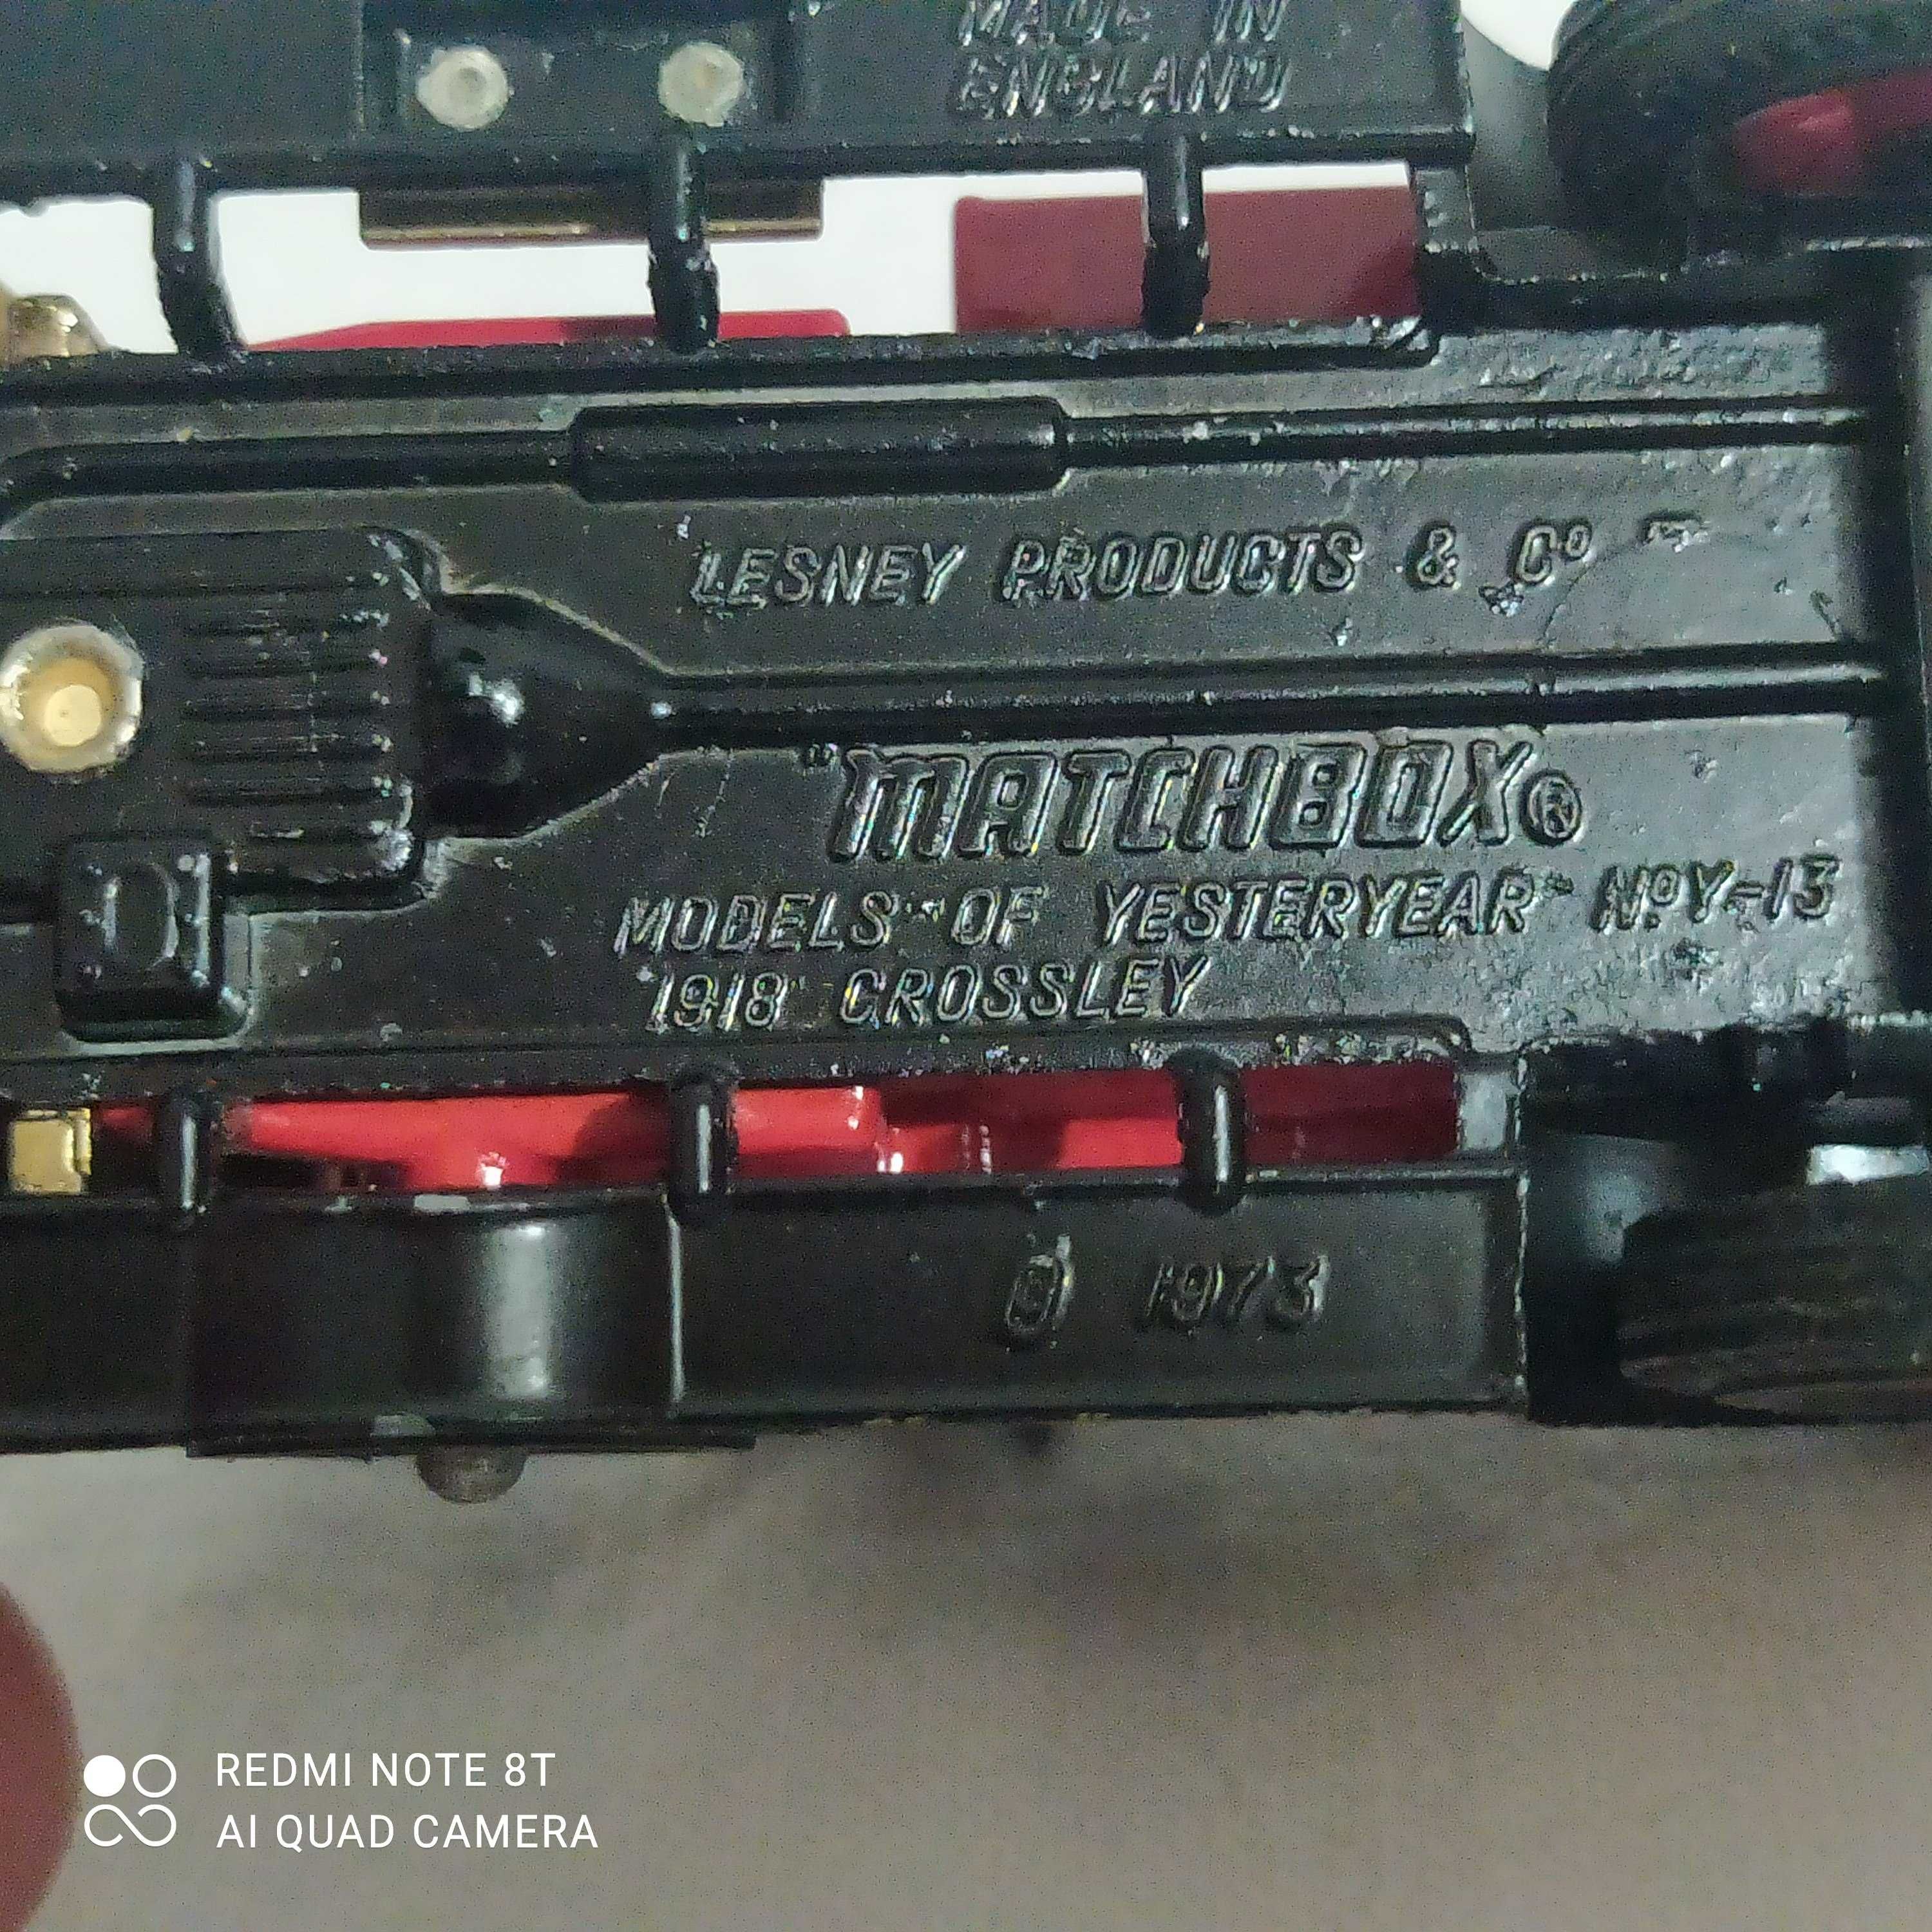 Matchbox Modele z przeszłości Y-13, skala 1:43, 1918, pojazd węglowy